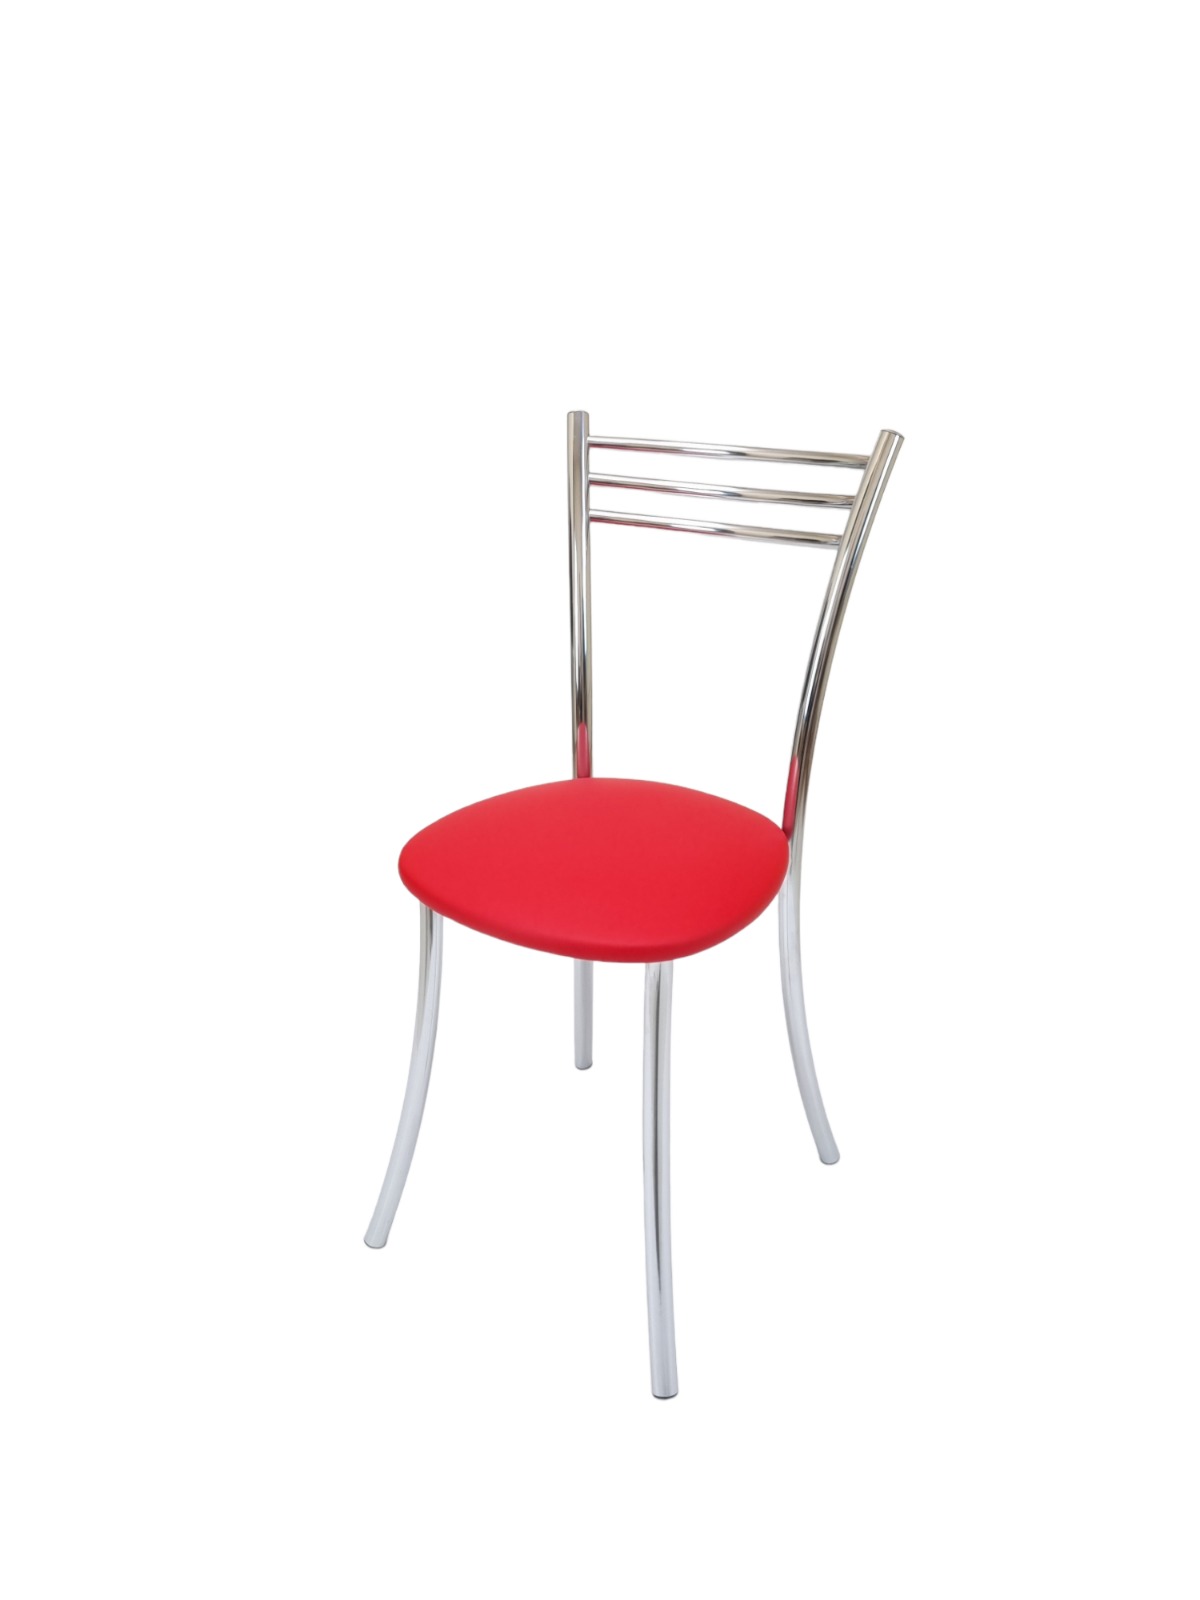 Комплект стульев 4шт. Chrome73 Хром1 красный